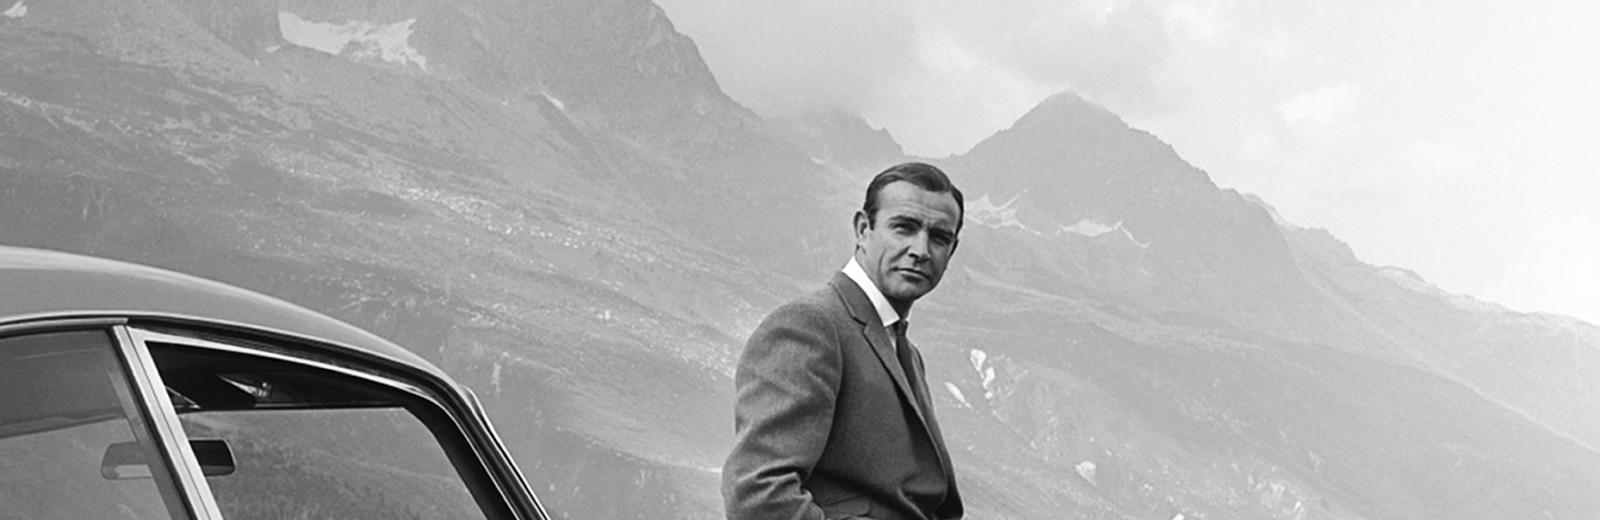 Warten auf Auric Goldfinger auf dem Furkapass: James Bond alias 007 auf Verfolgungsjagd im Aston Martin DB5 in der Schweiz